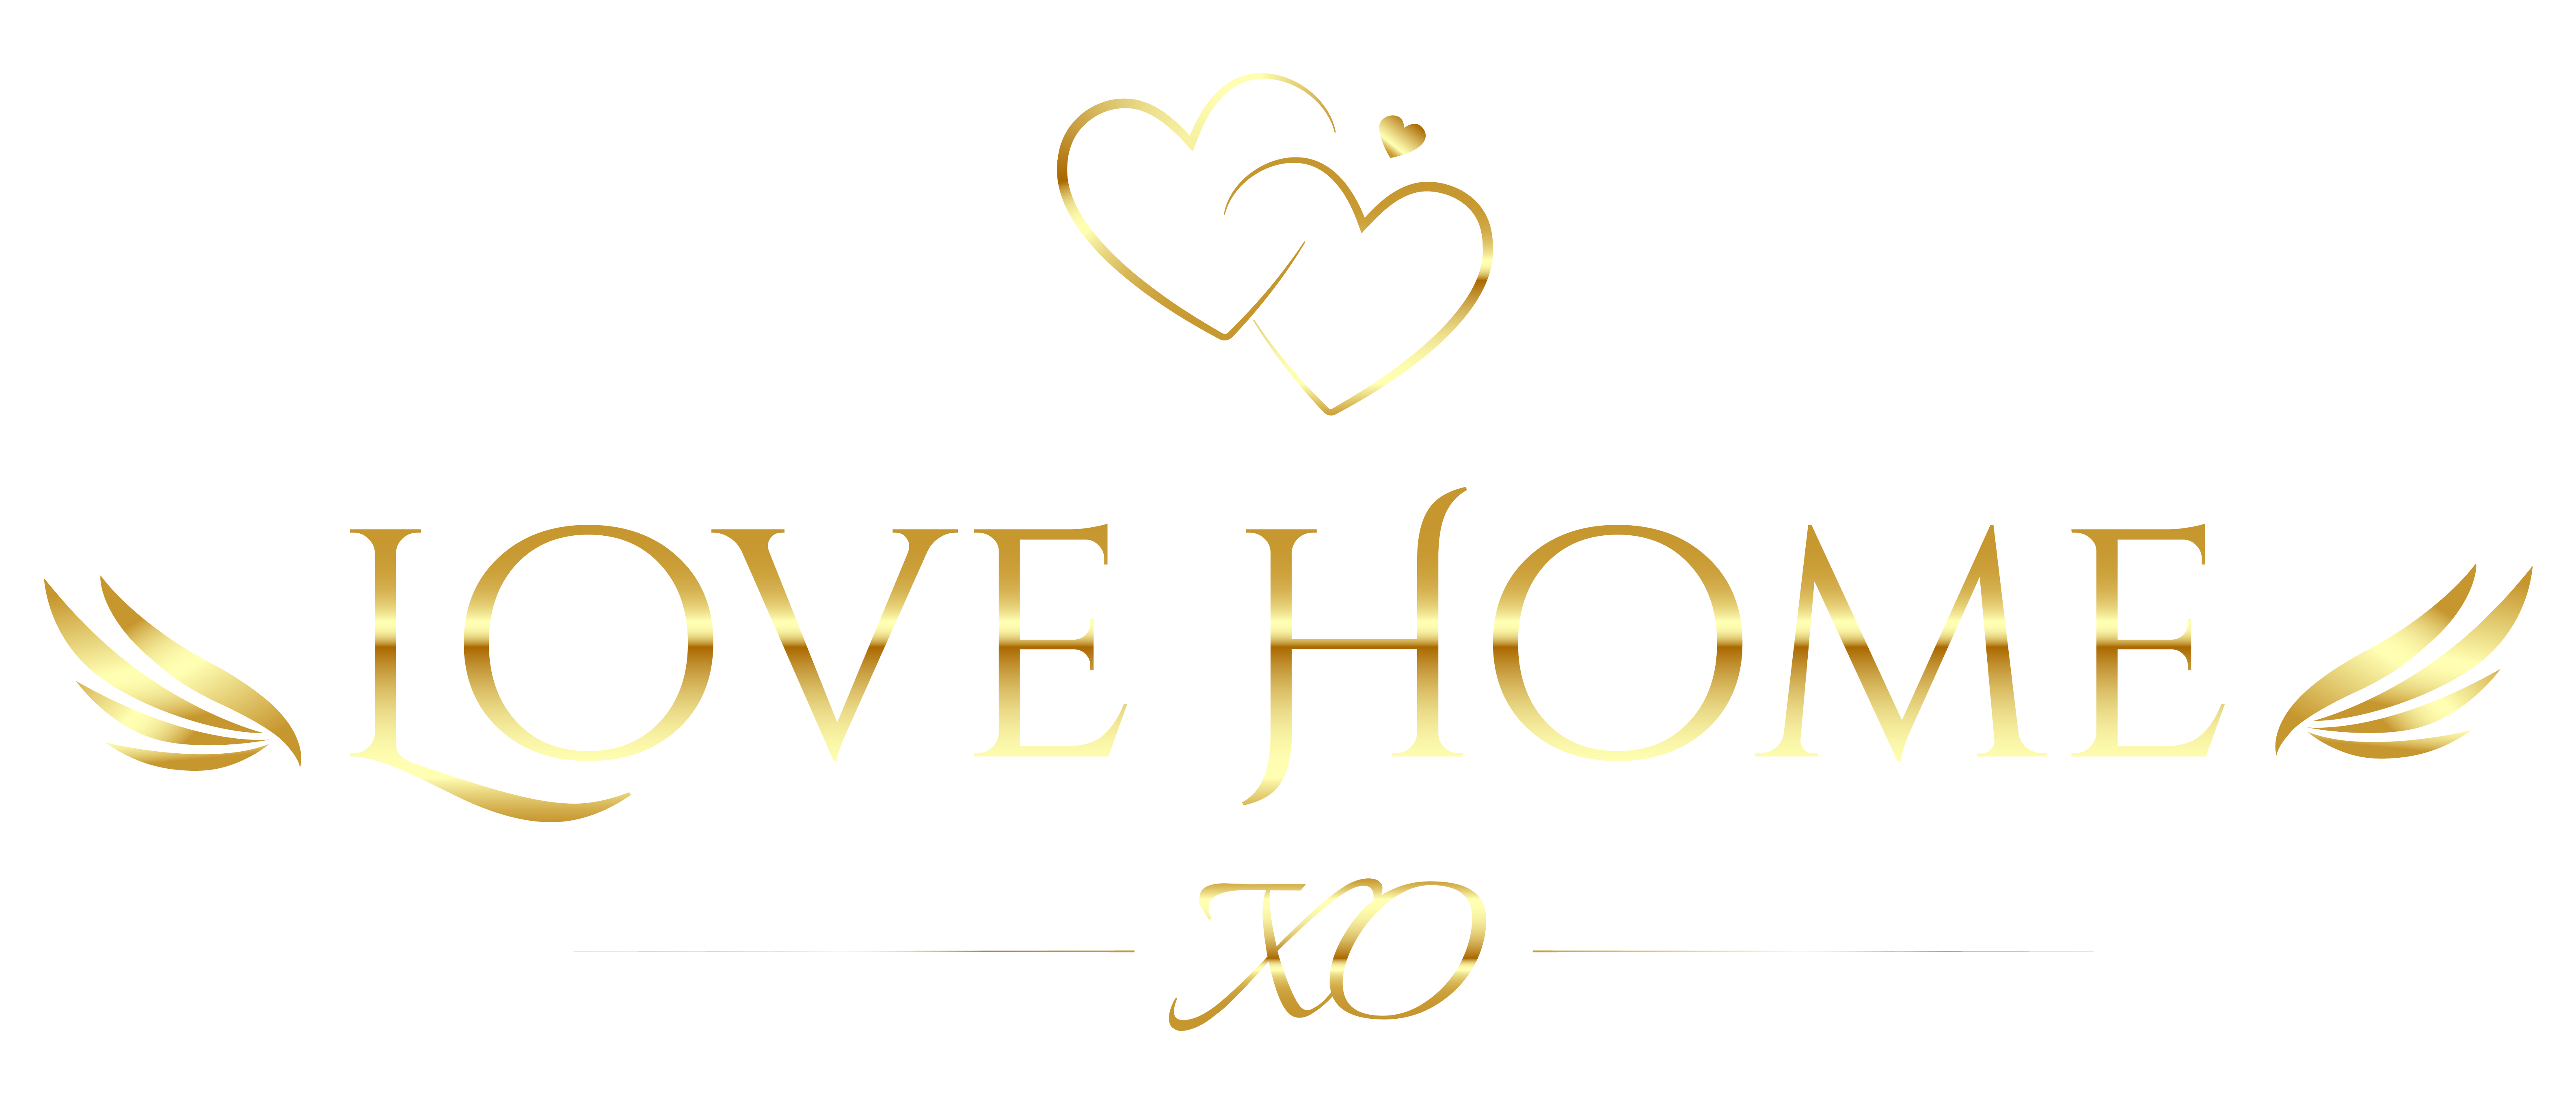 LOVE HOME XO